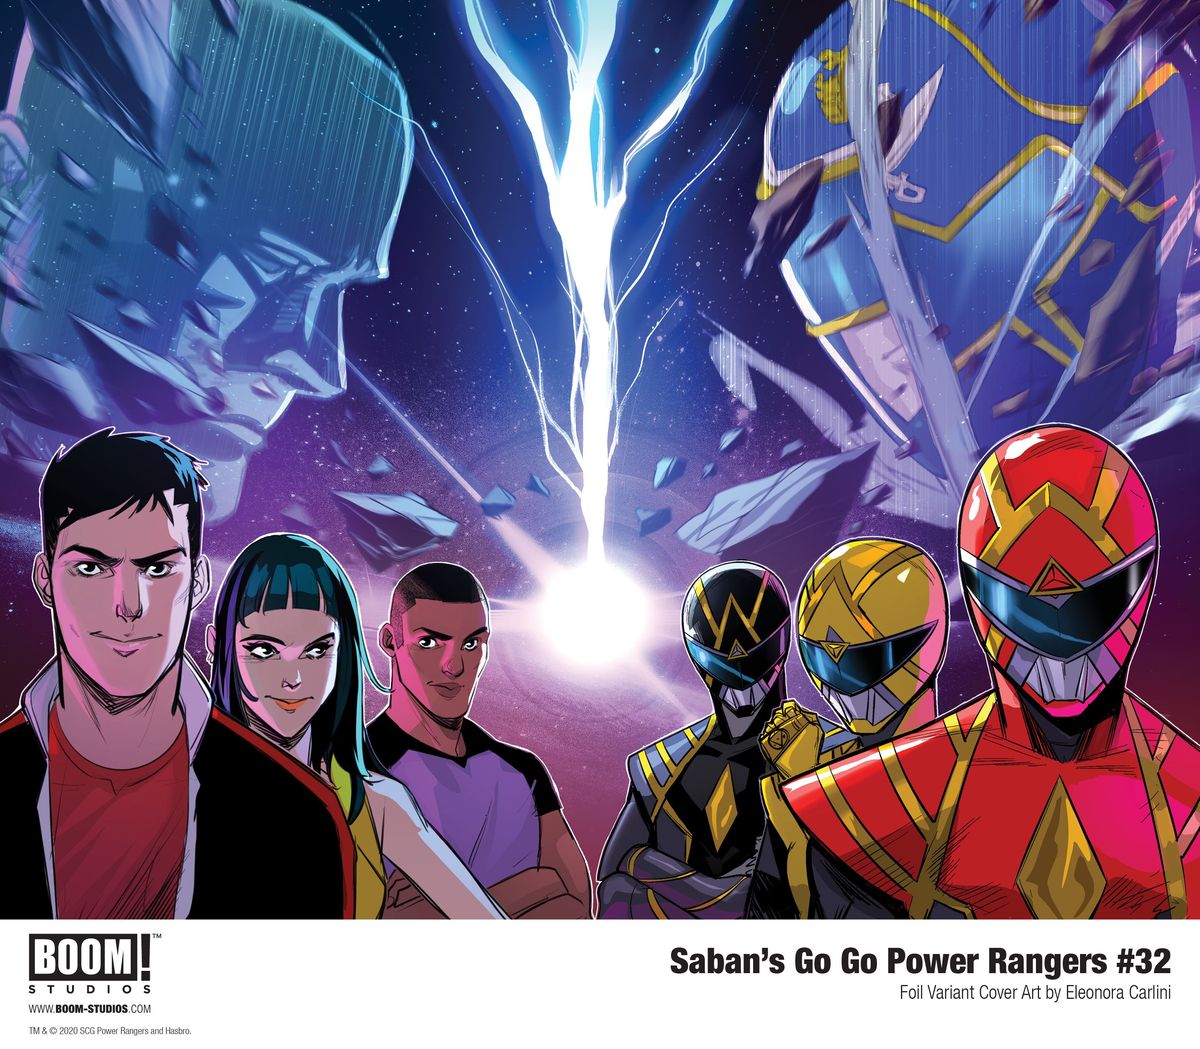 พิเศษ: บูม! สตูดิโอ Go Go Power Rangers จะจบลงด้วยฉบับ #32